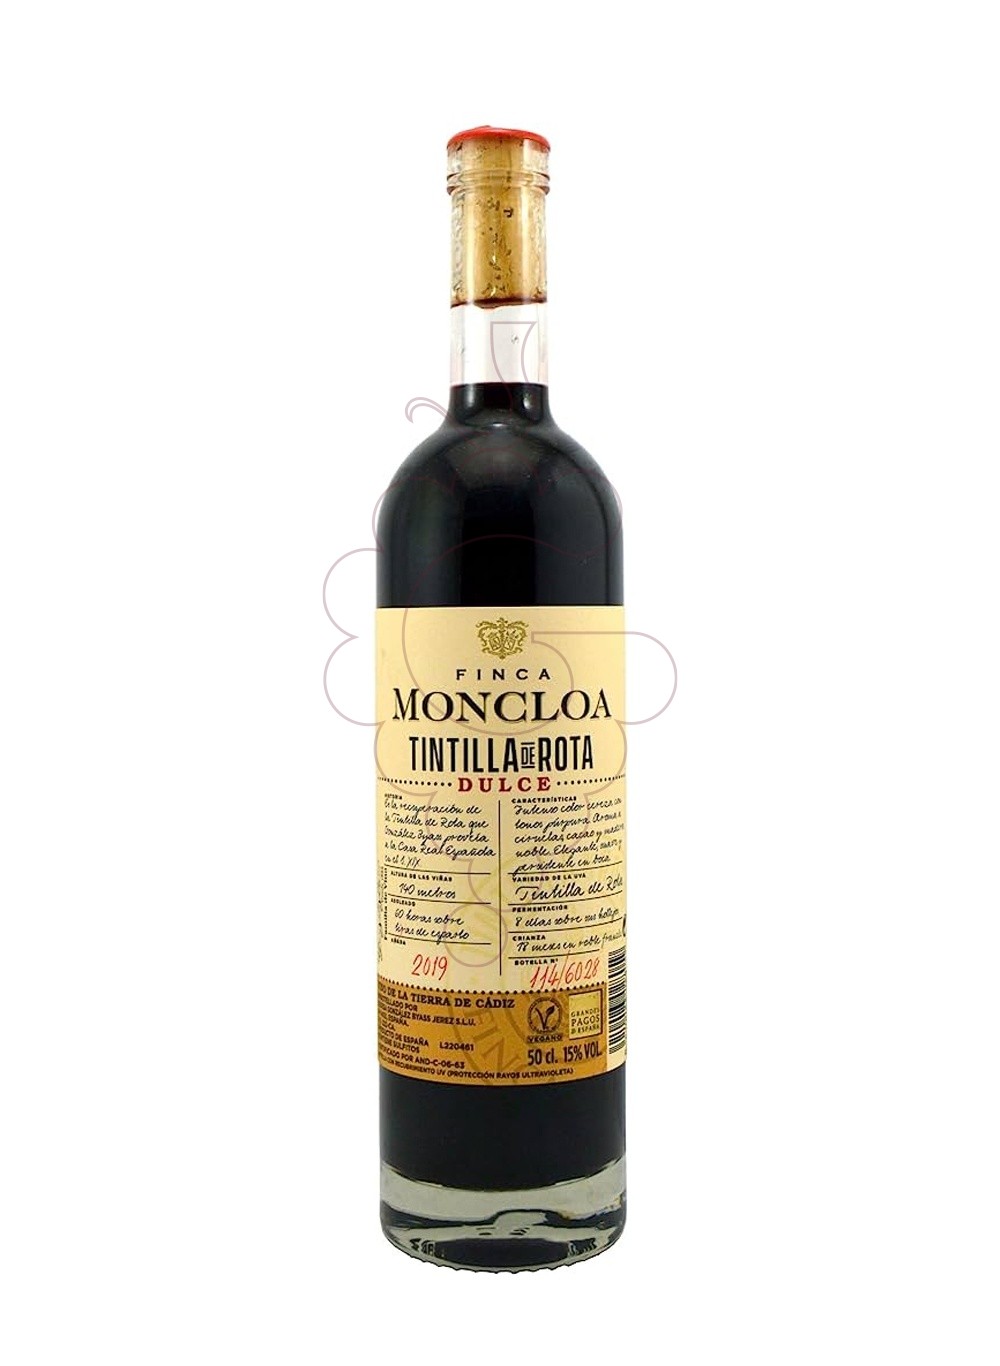 Photo Tintilla de Rota de Finca Moncloa fortified wine